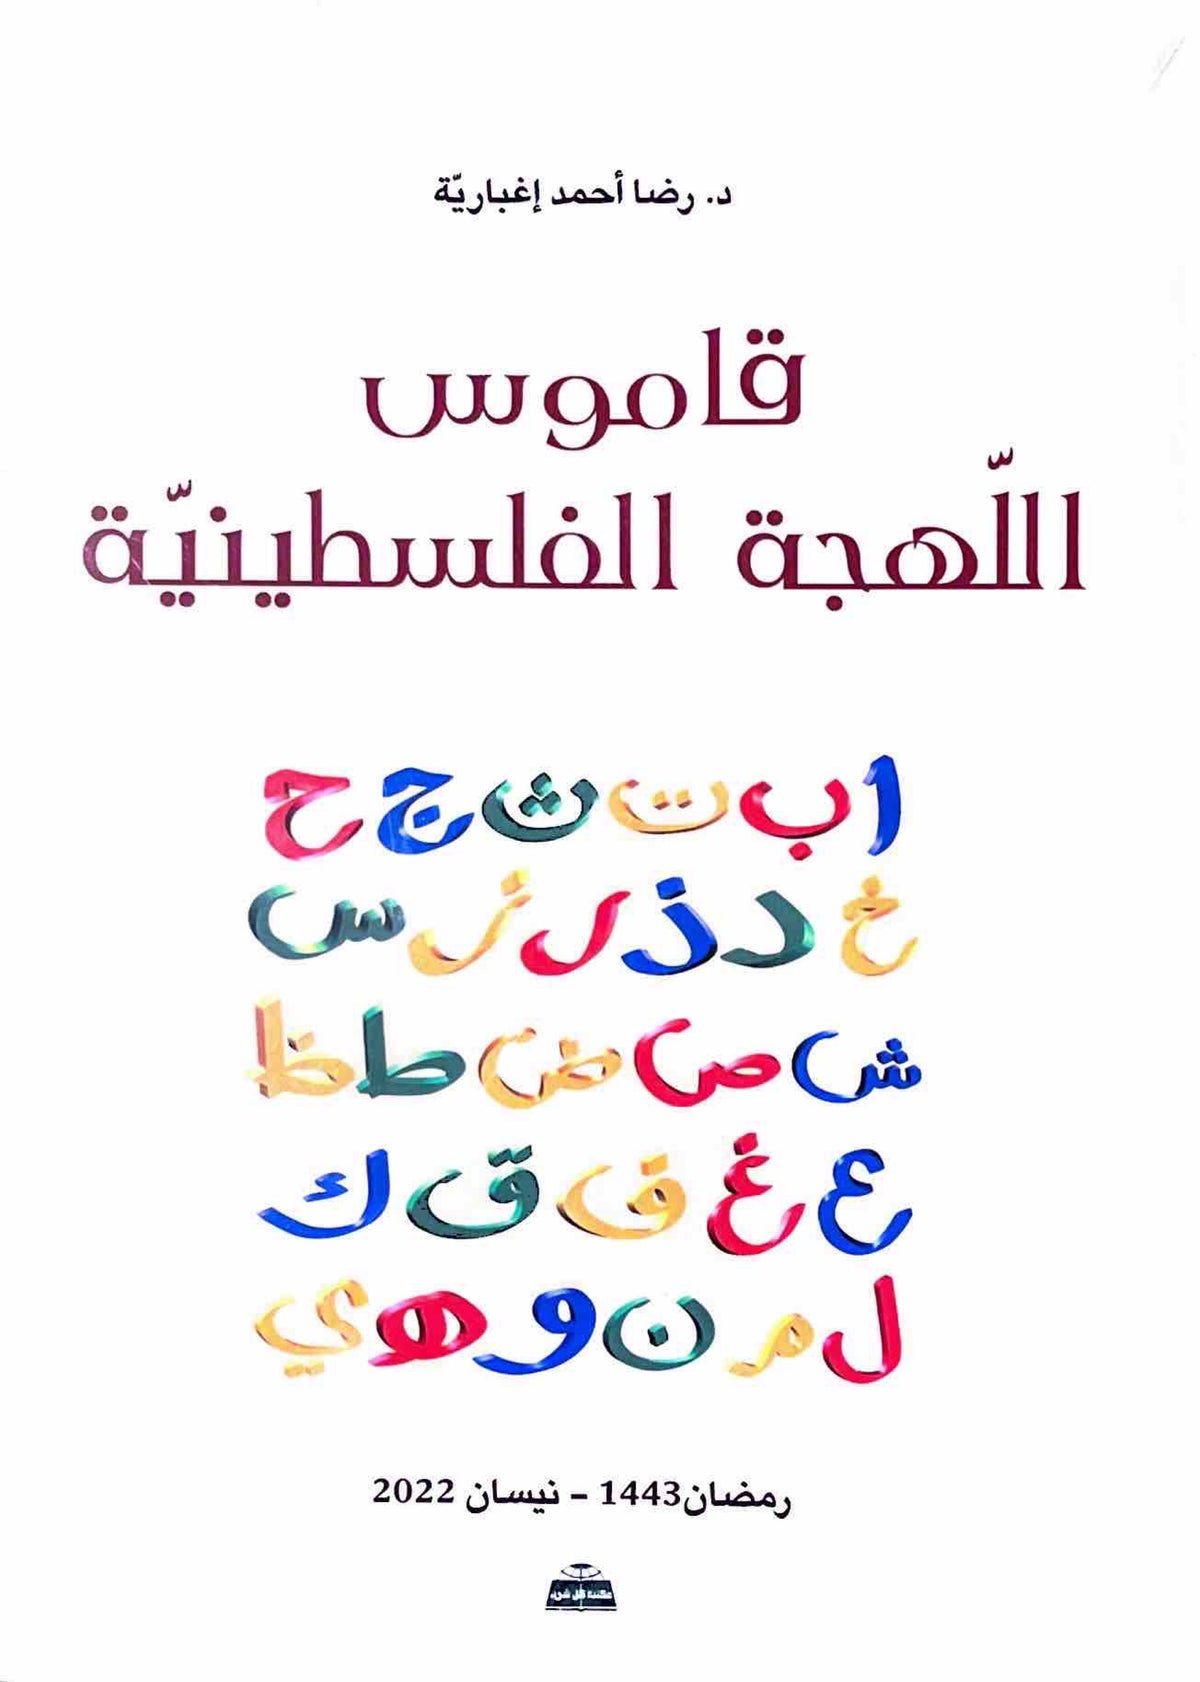 قاموس اللهجة الفلسطينية